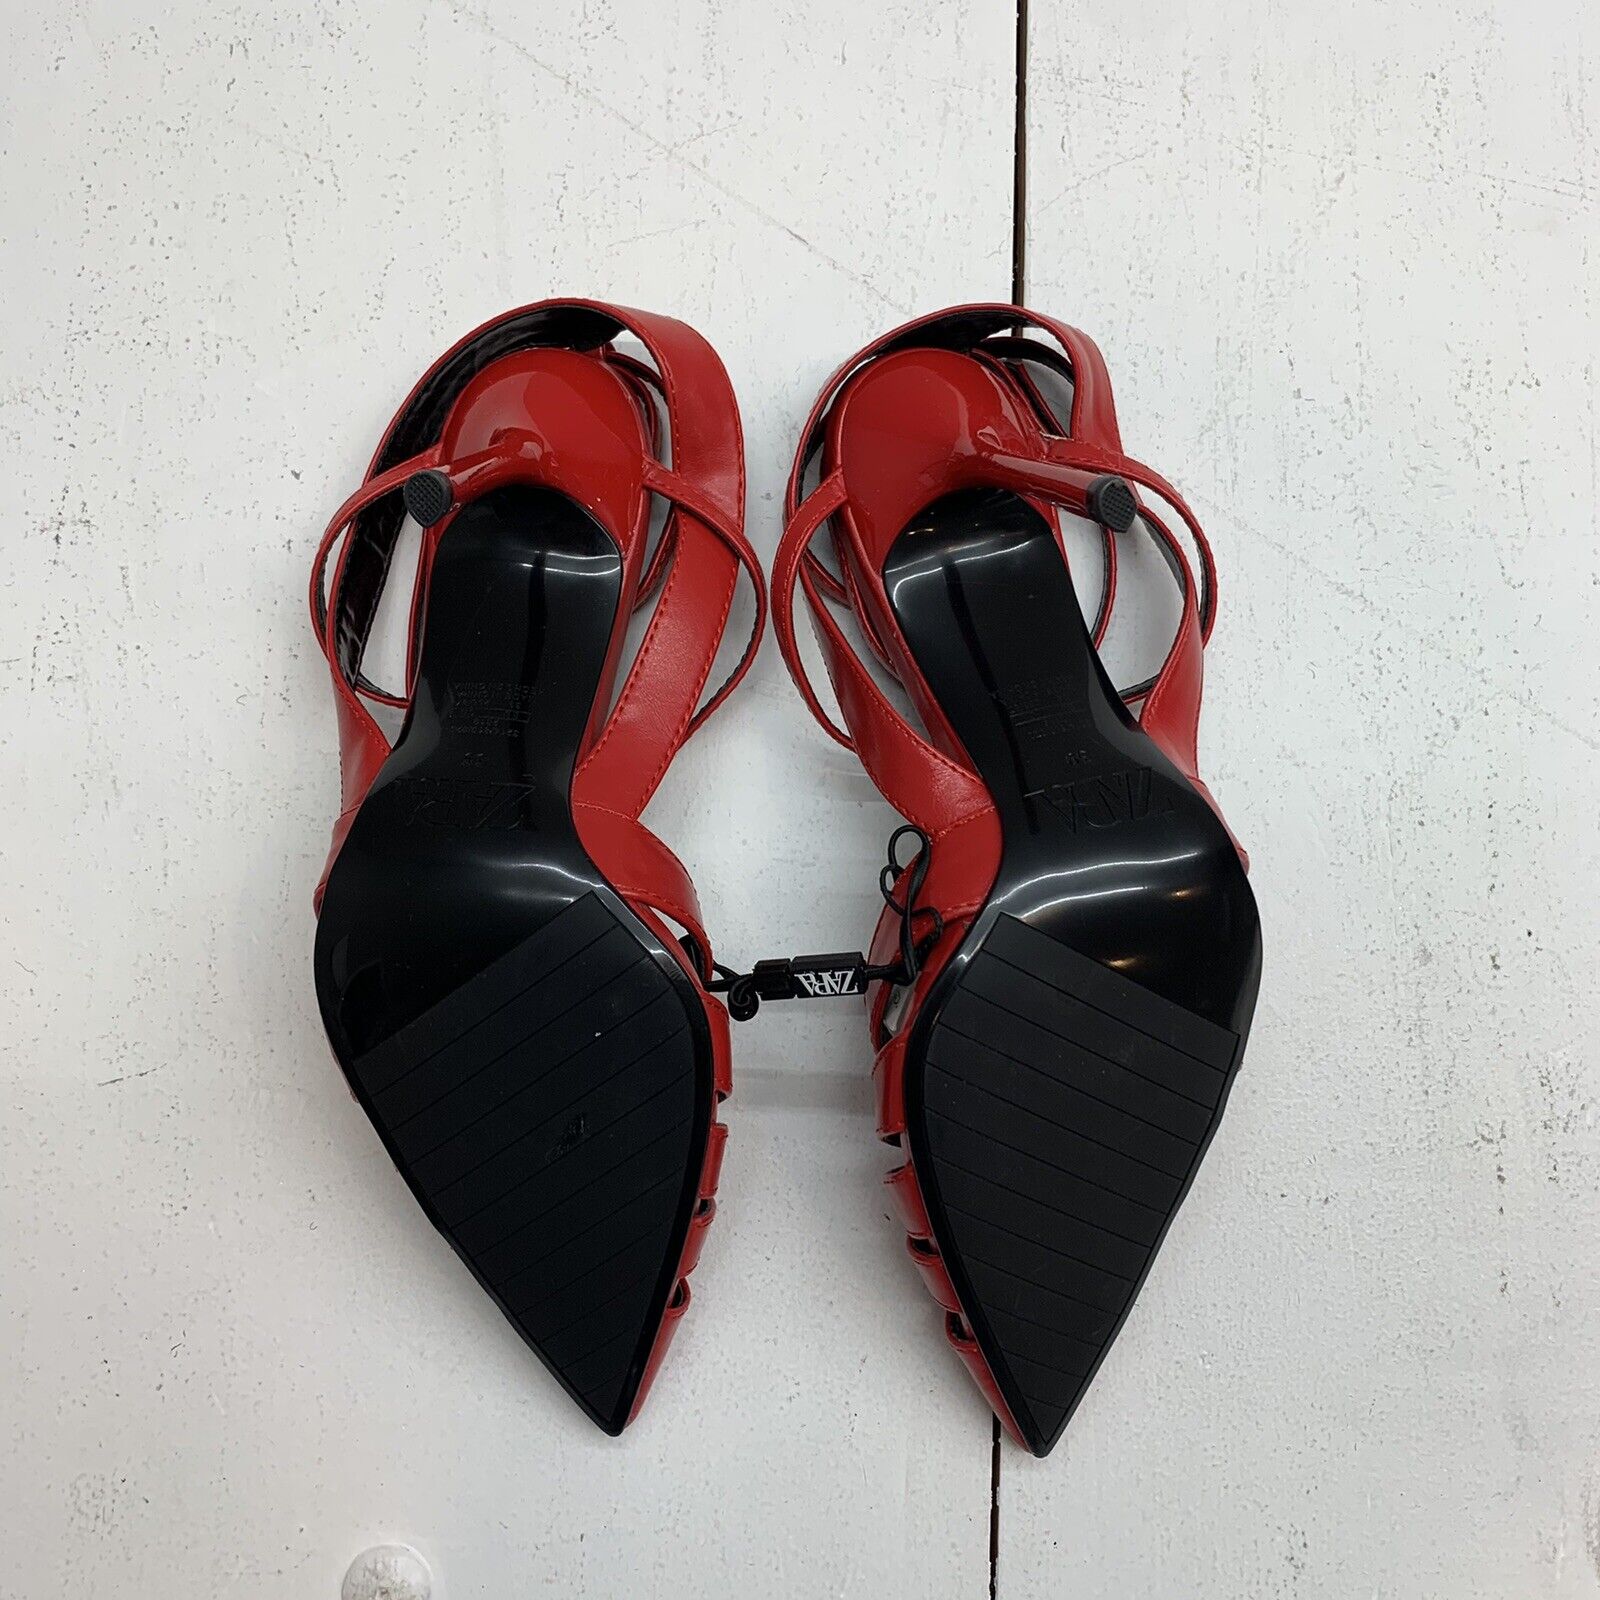 Zara's pointed middle heel | Medium heel shoes, Heels, Kitten heel shoes